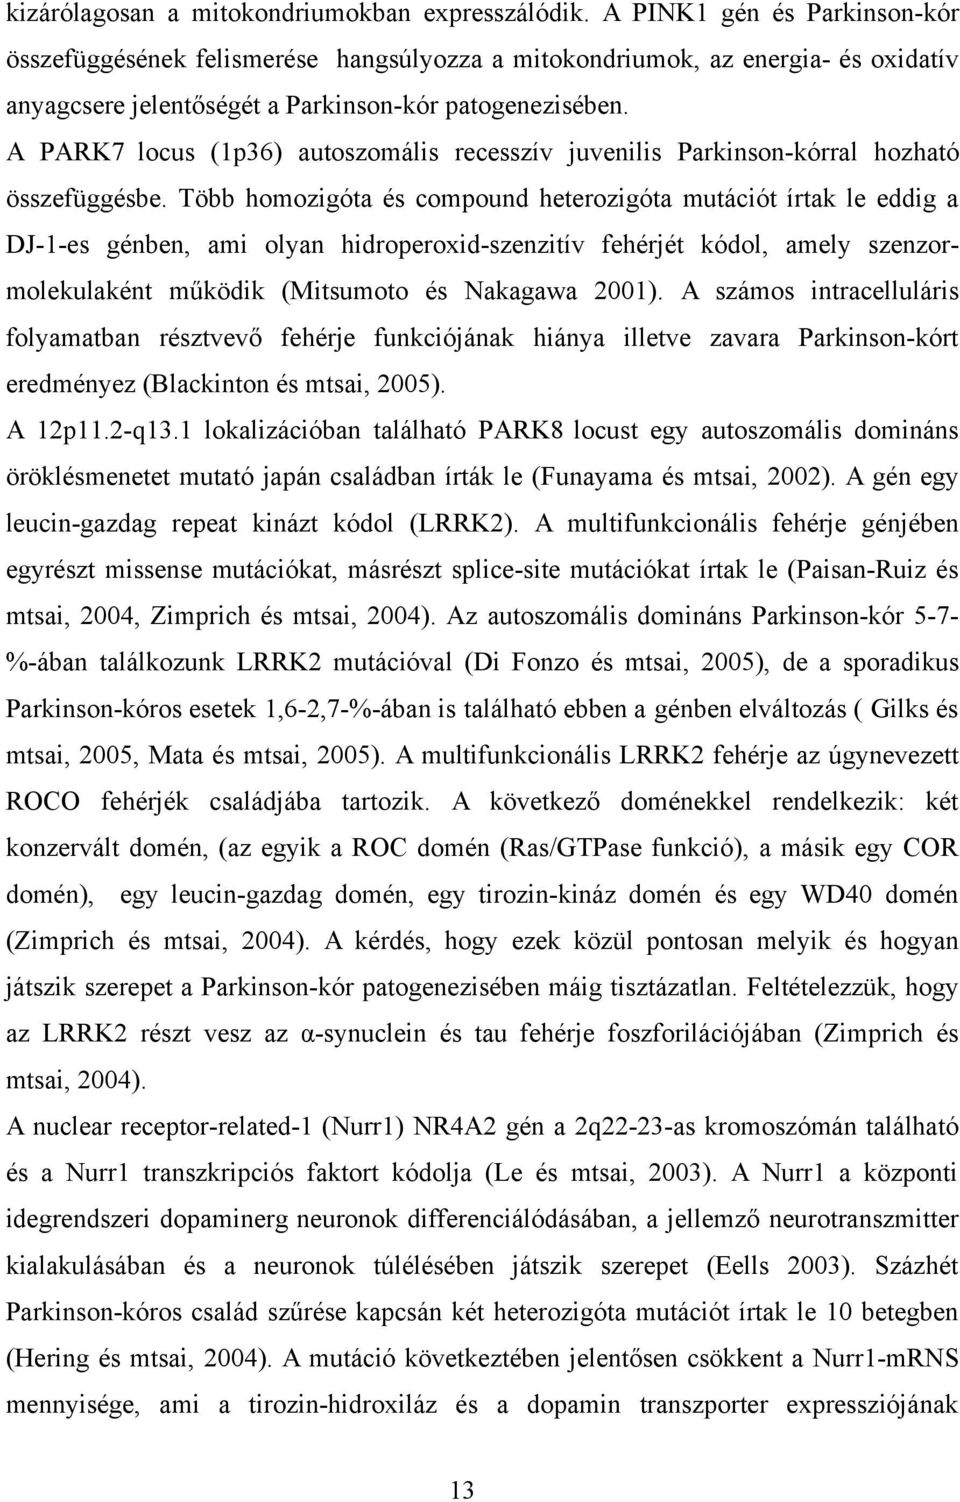 A PARK7 locus (1p36) autoszomális recesszív juvenilis Parkinson-kórral hozható összefüggésbe.